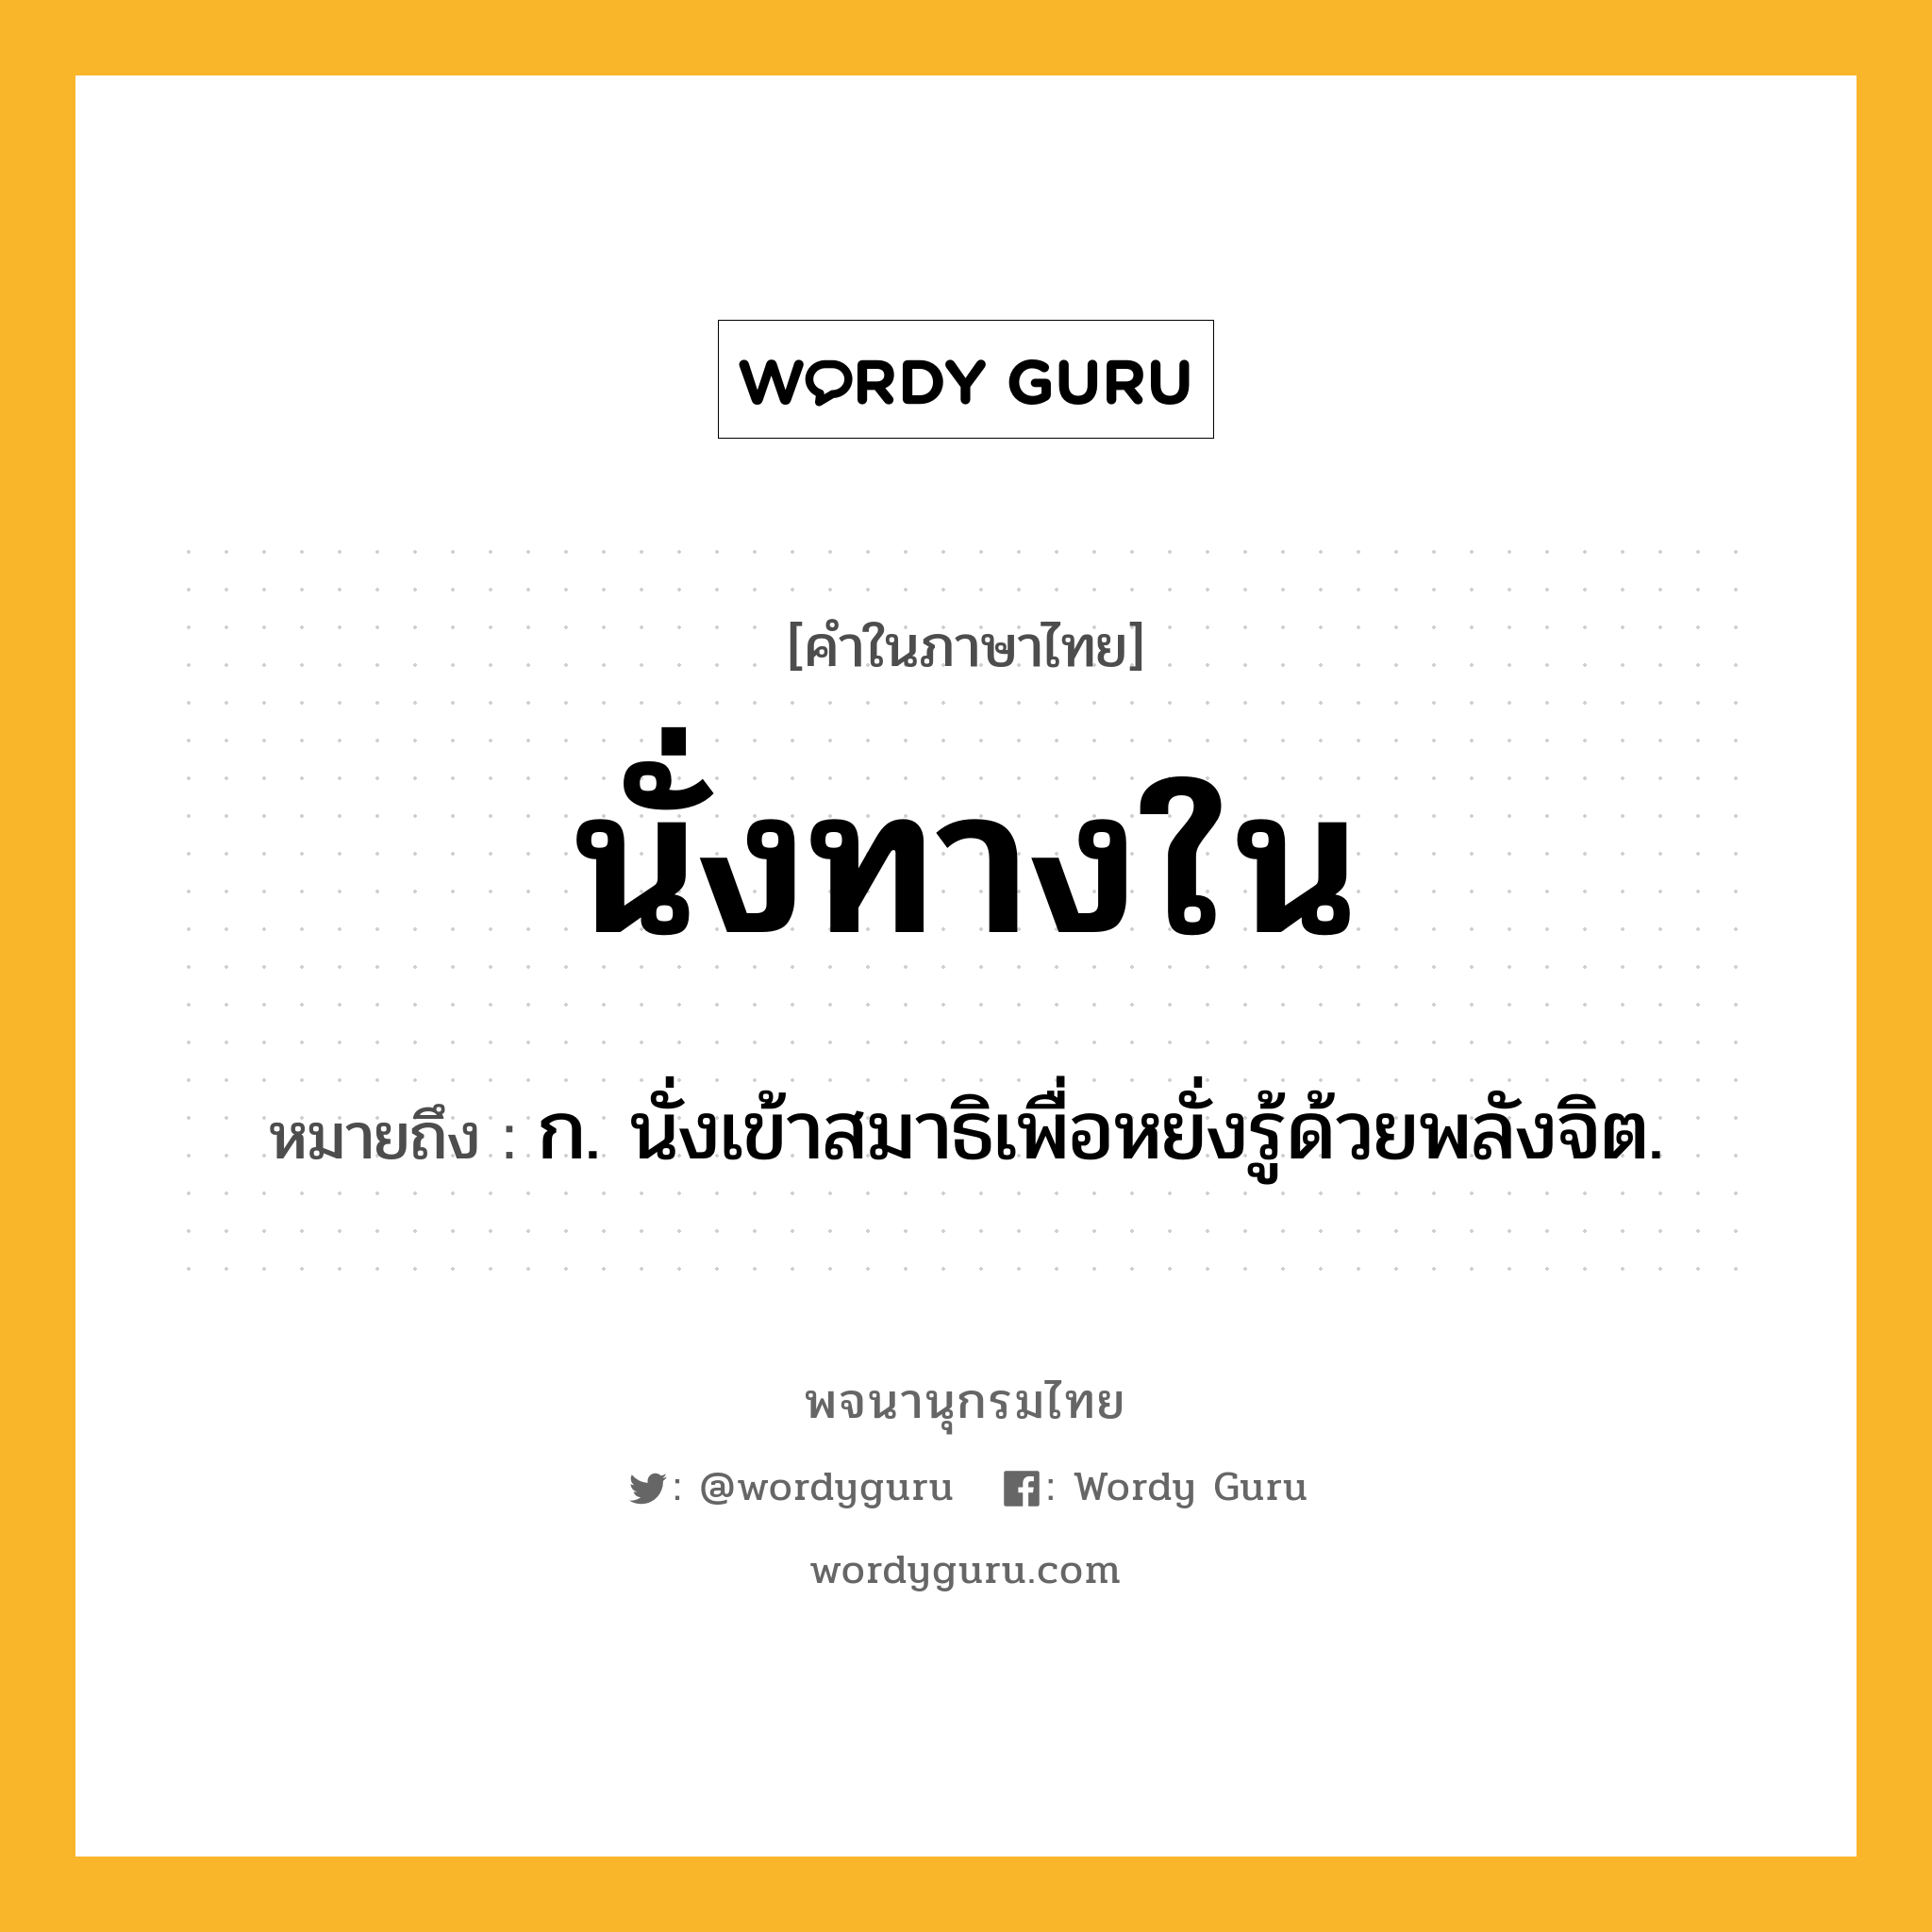 นั่งทางใน หมายถึงอะไร?, คำในภาษาไทย นั่งทางใน หมายถึง ก. นั่งเข้าสมาธิเพื่อหยั่งรู้ด้วยพลังจิต.